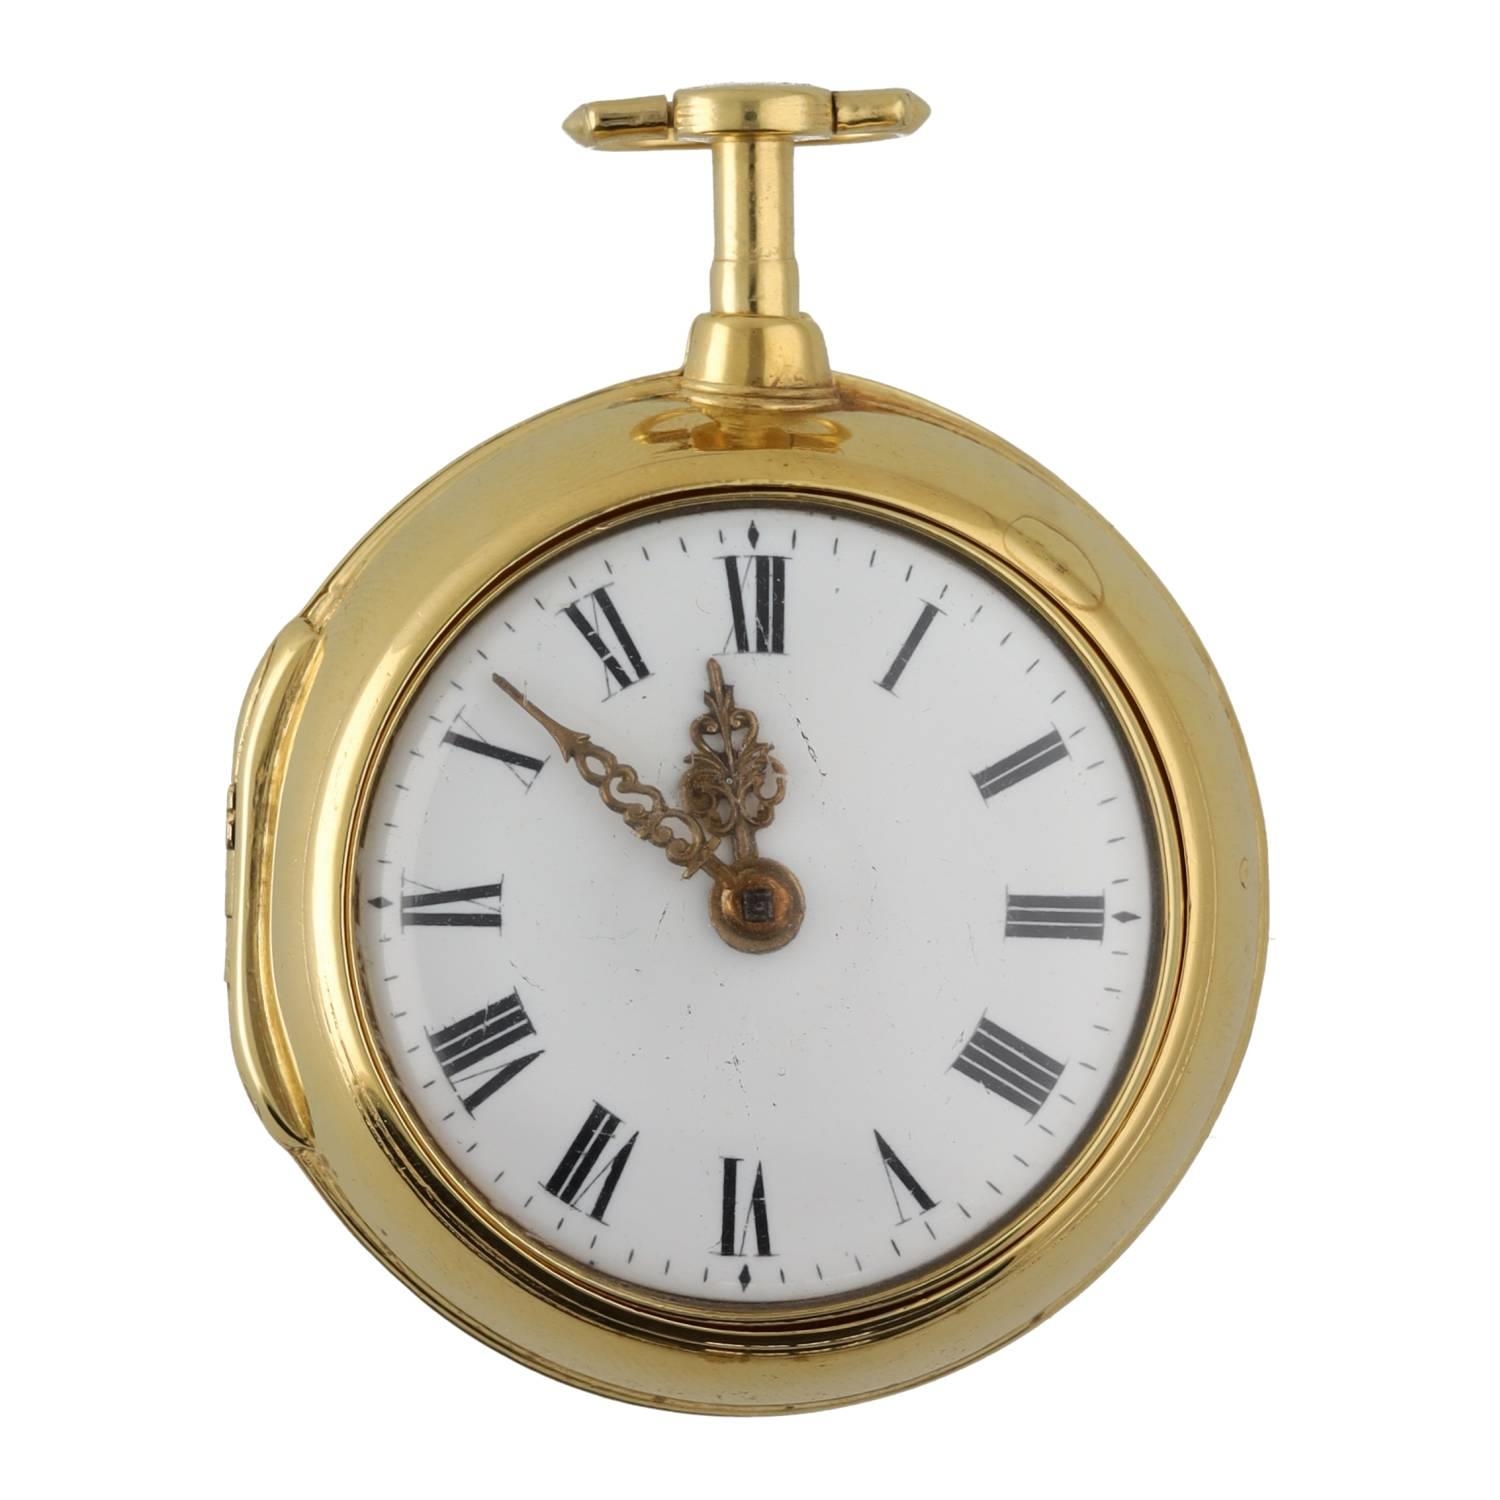 Finch & Bradley, Halifax - fine 18th century gilt pair cased verge pocket watch, the movement with - Bild 2 aus 6